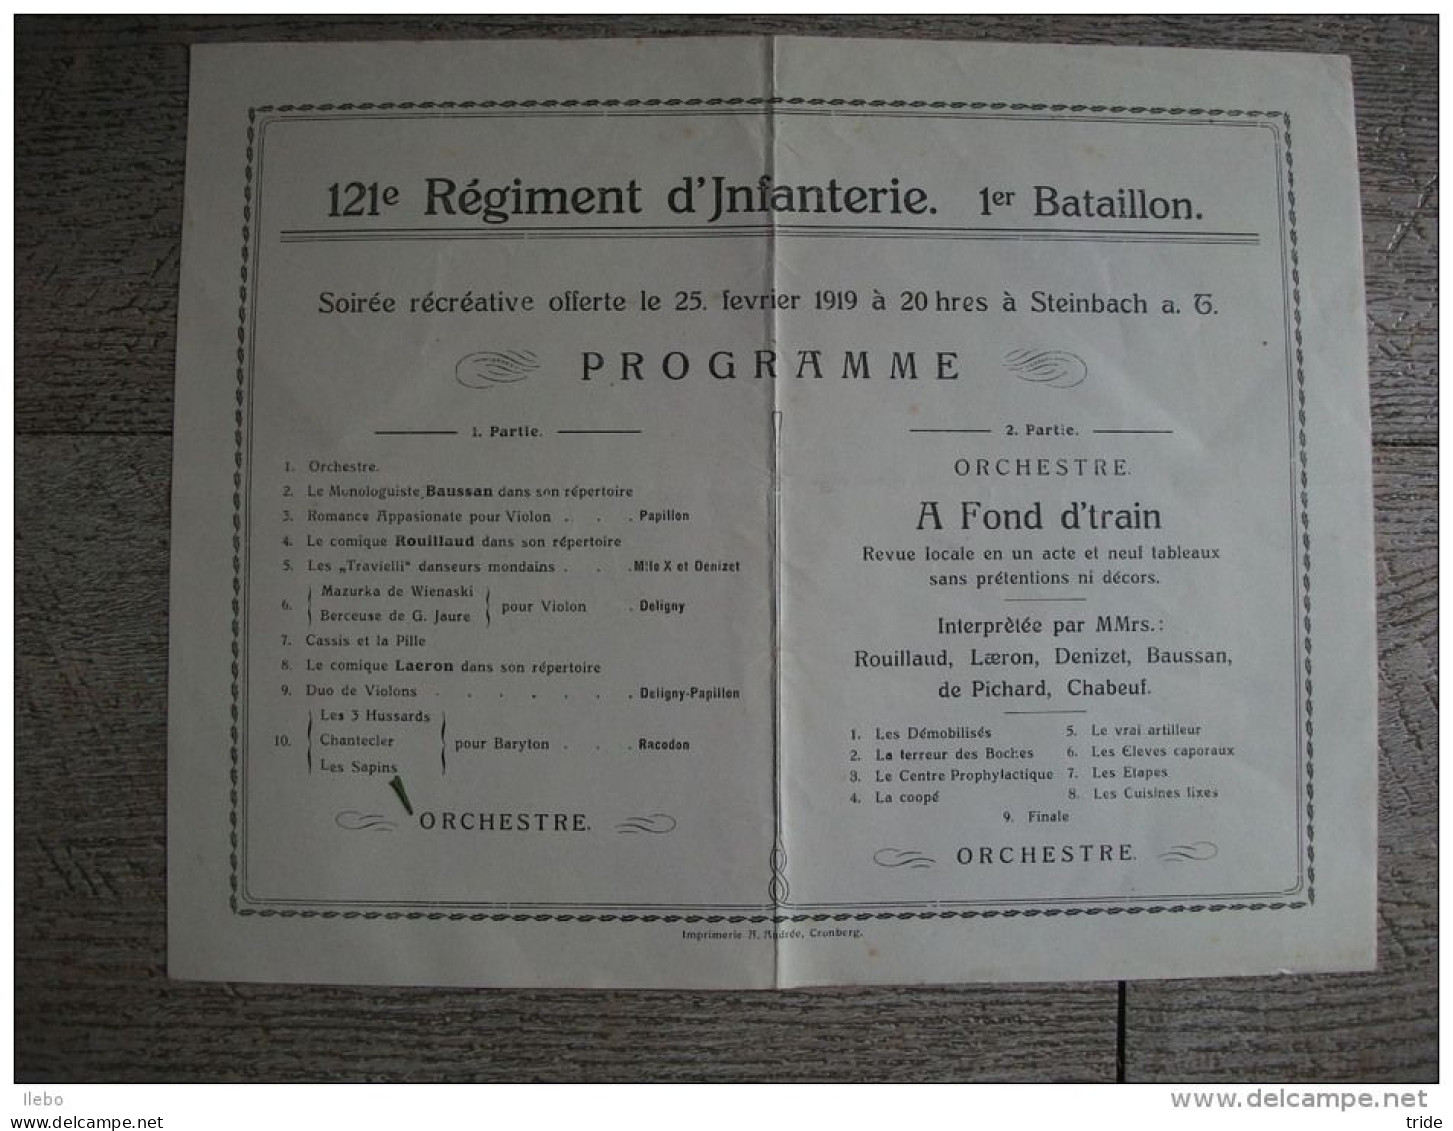 Programme 121 Régiment Infanterie 1 Bataillon 1919 Steinbach Militaire Orchestre - Programmi